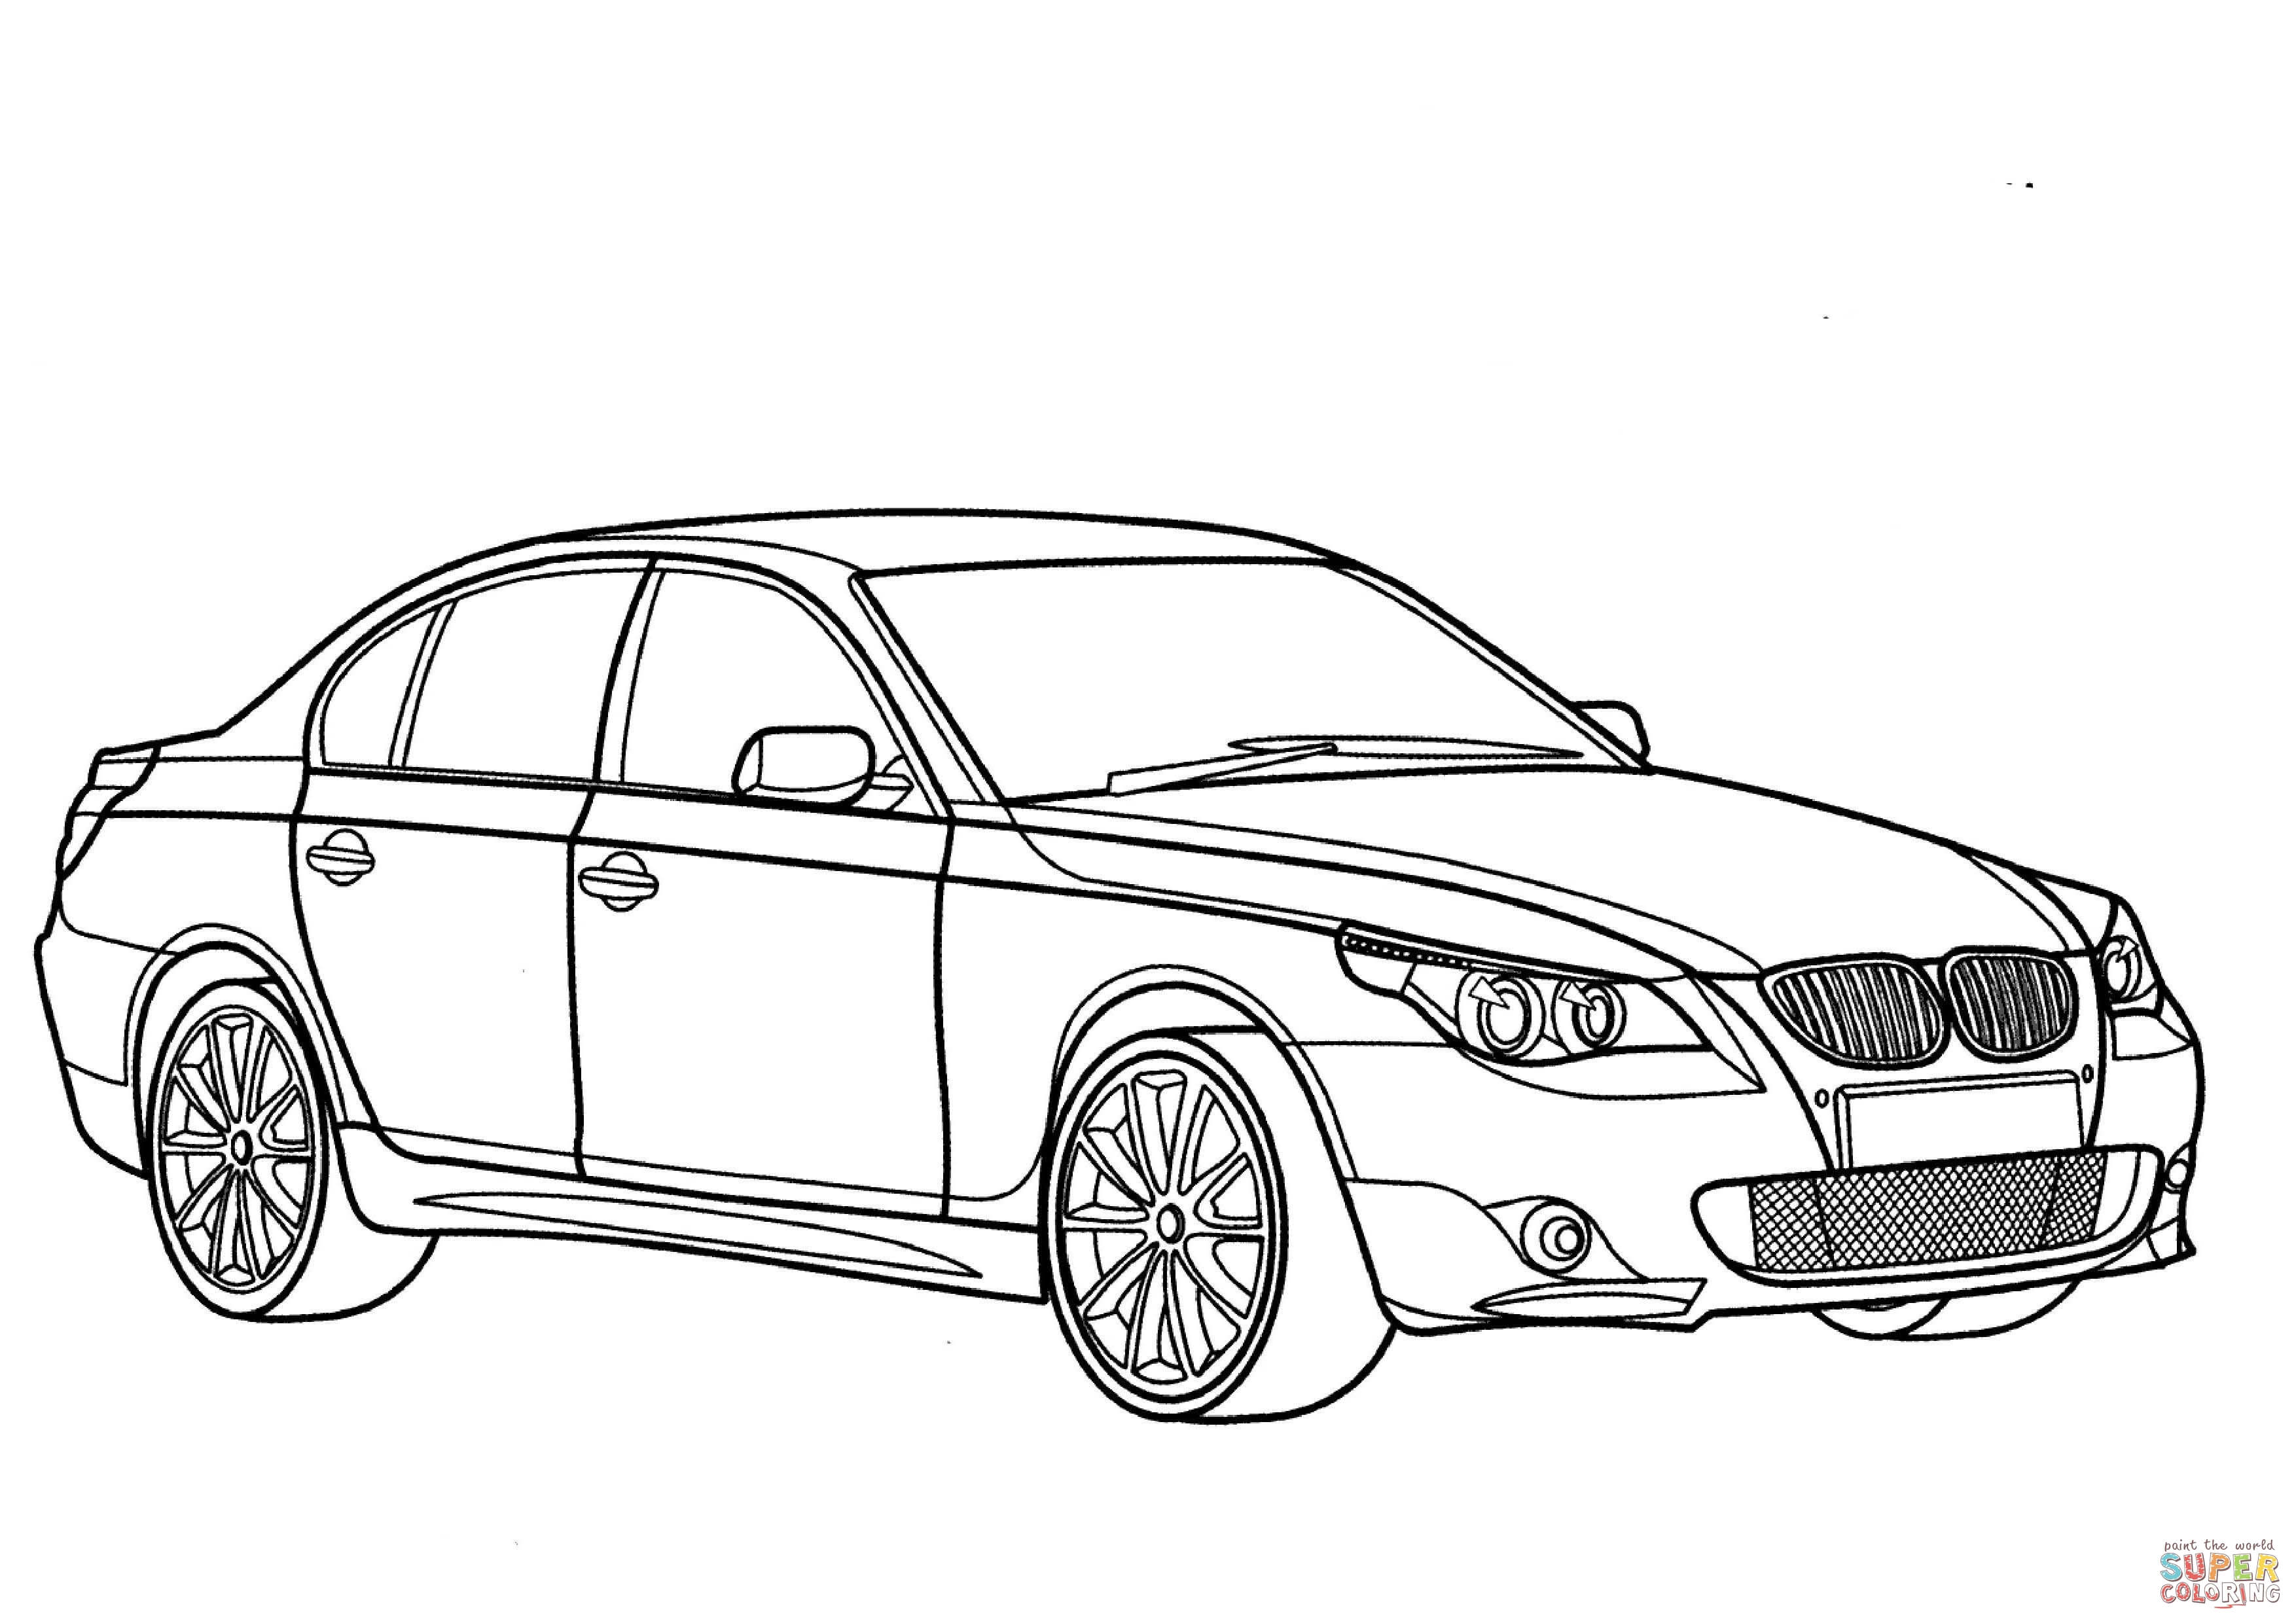 Dessin Un beau dessin de BMW a colorier et imprimer gratuit